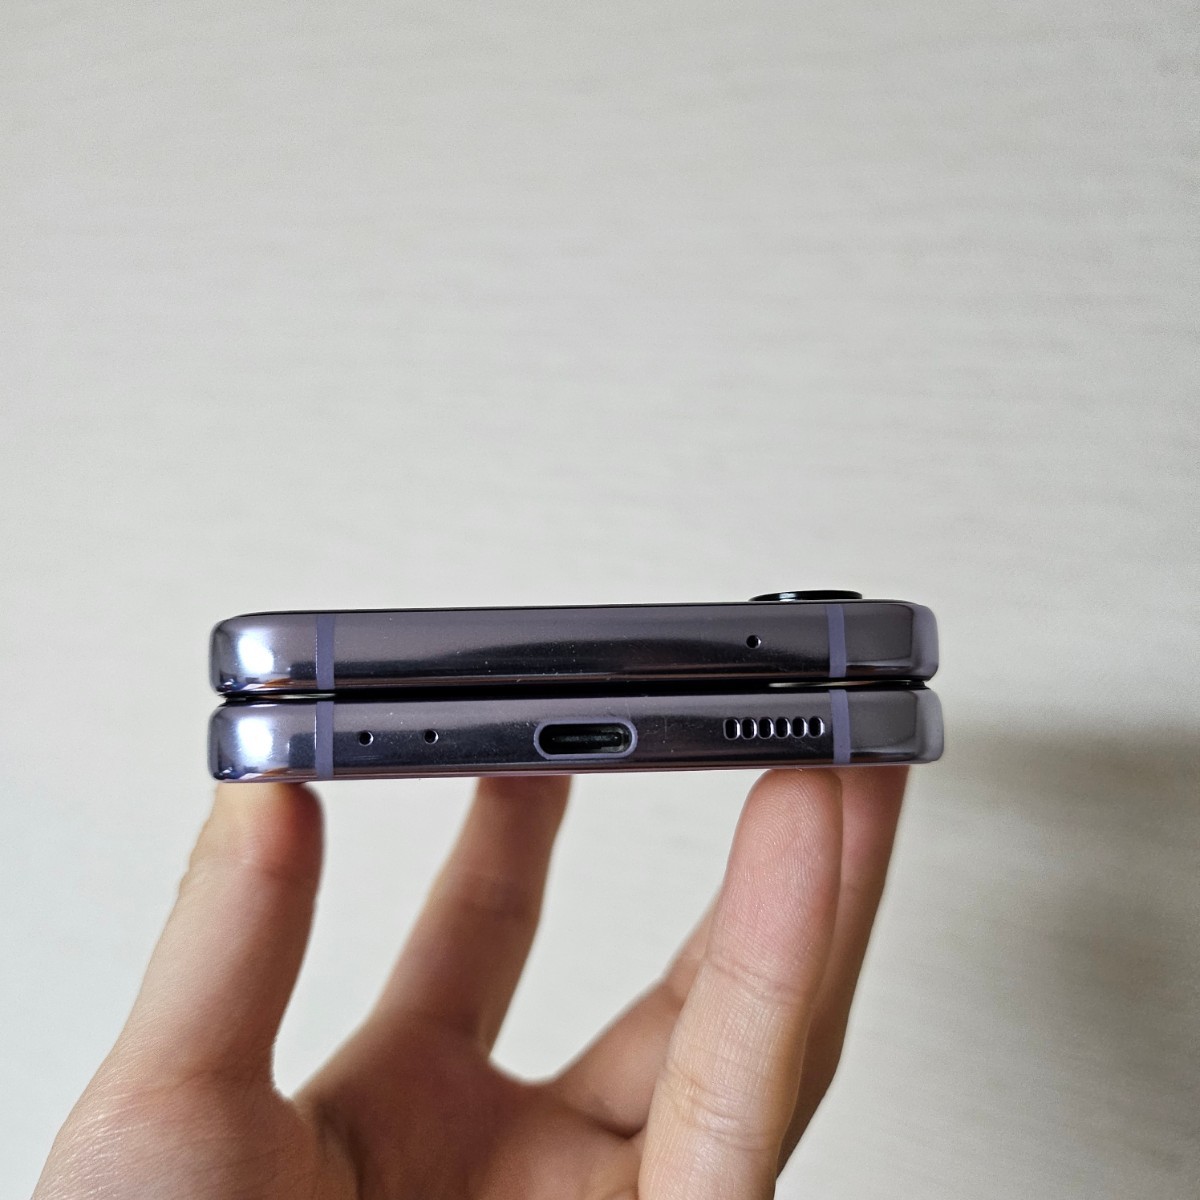 日本製 Galaxy Z Flip4 ポラパープル 楽天版 メモリ8GB ストレージ